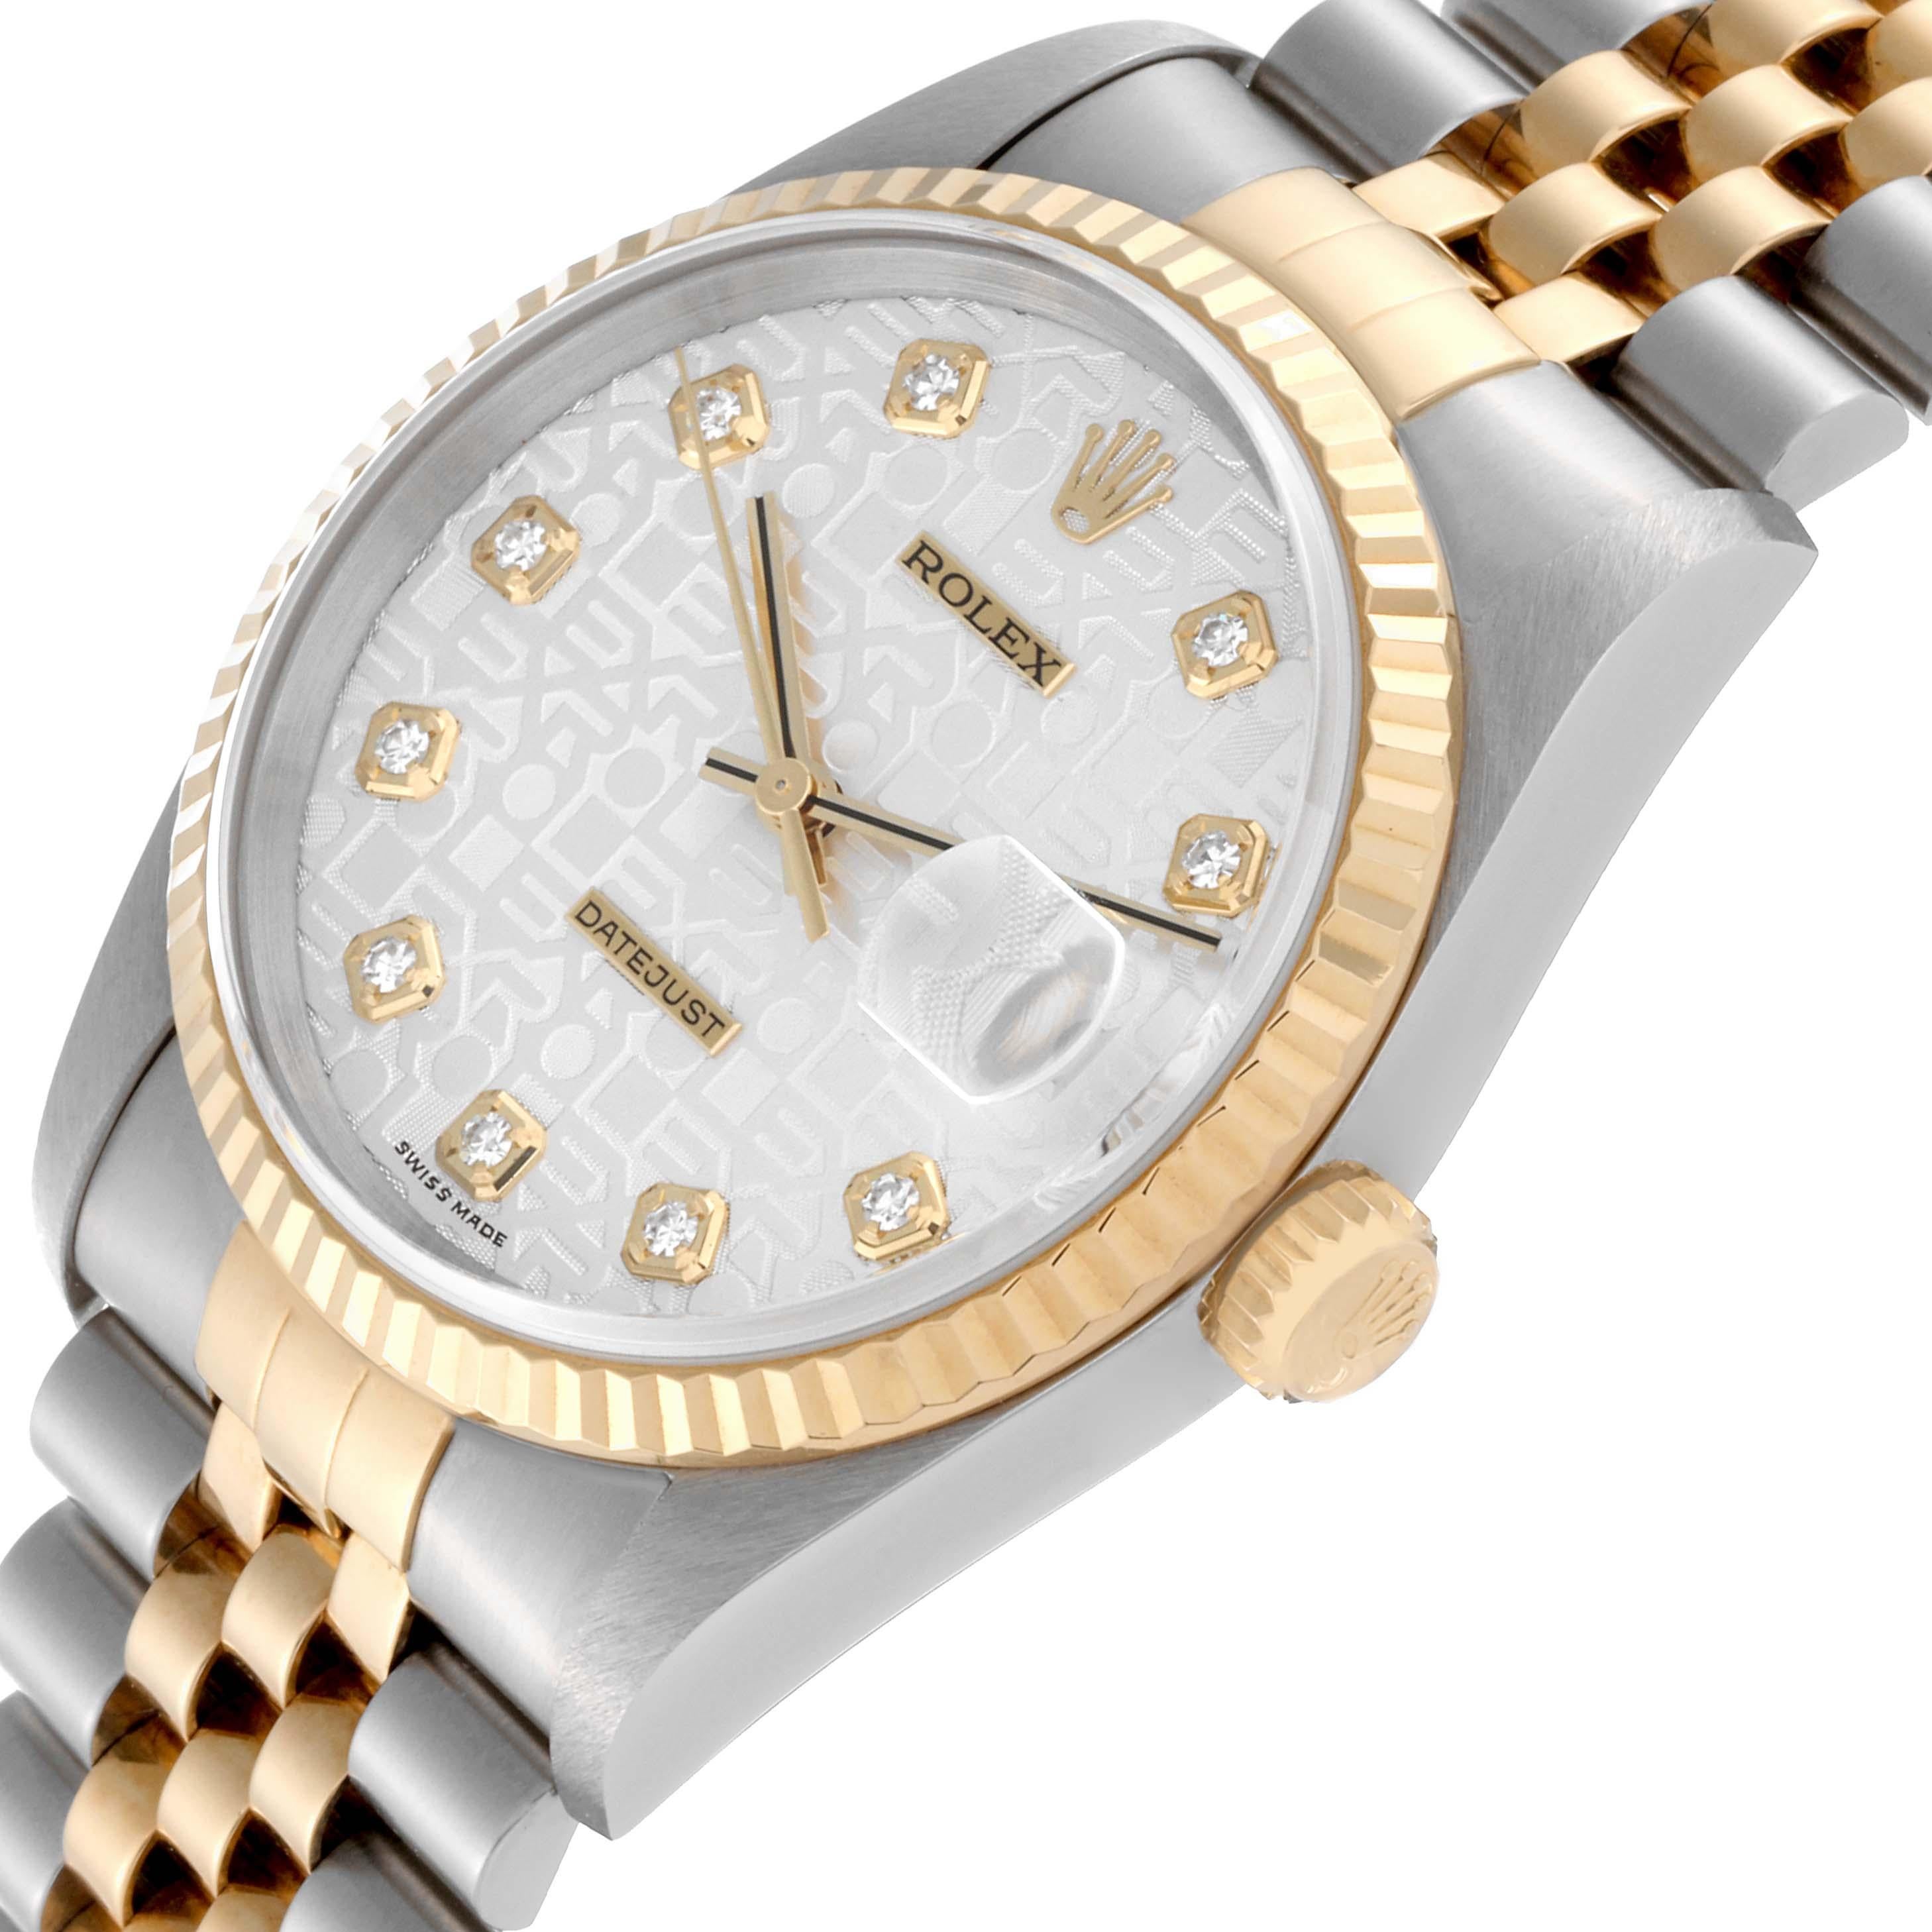 Rolex Datejust Jahrestag Diamant-Zifferblatt Stahl-Gelbgold-Uhr 16233 Box Papiere 1